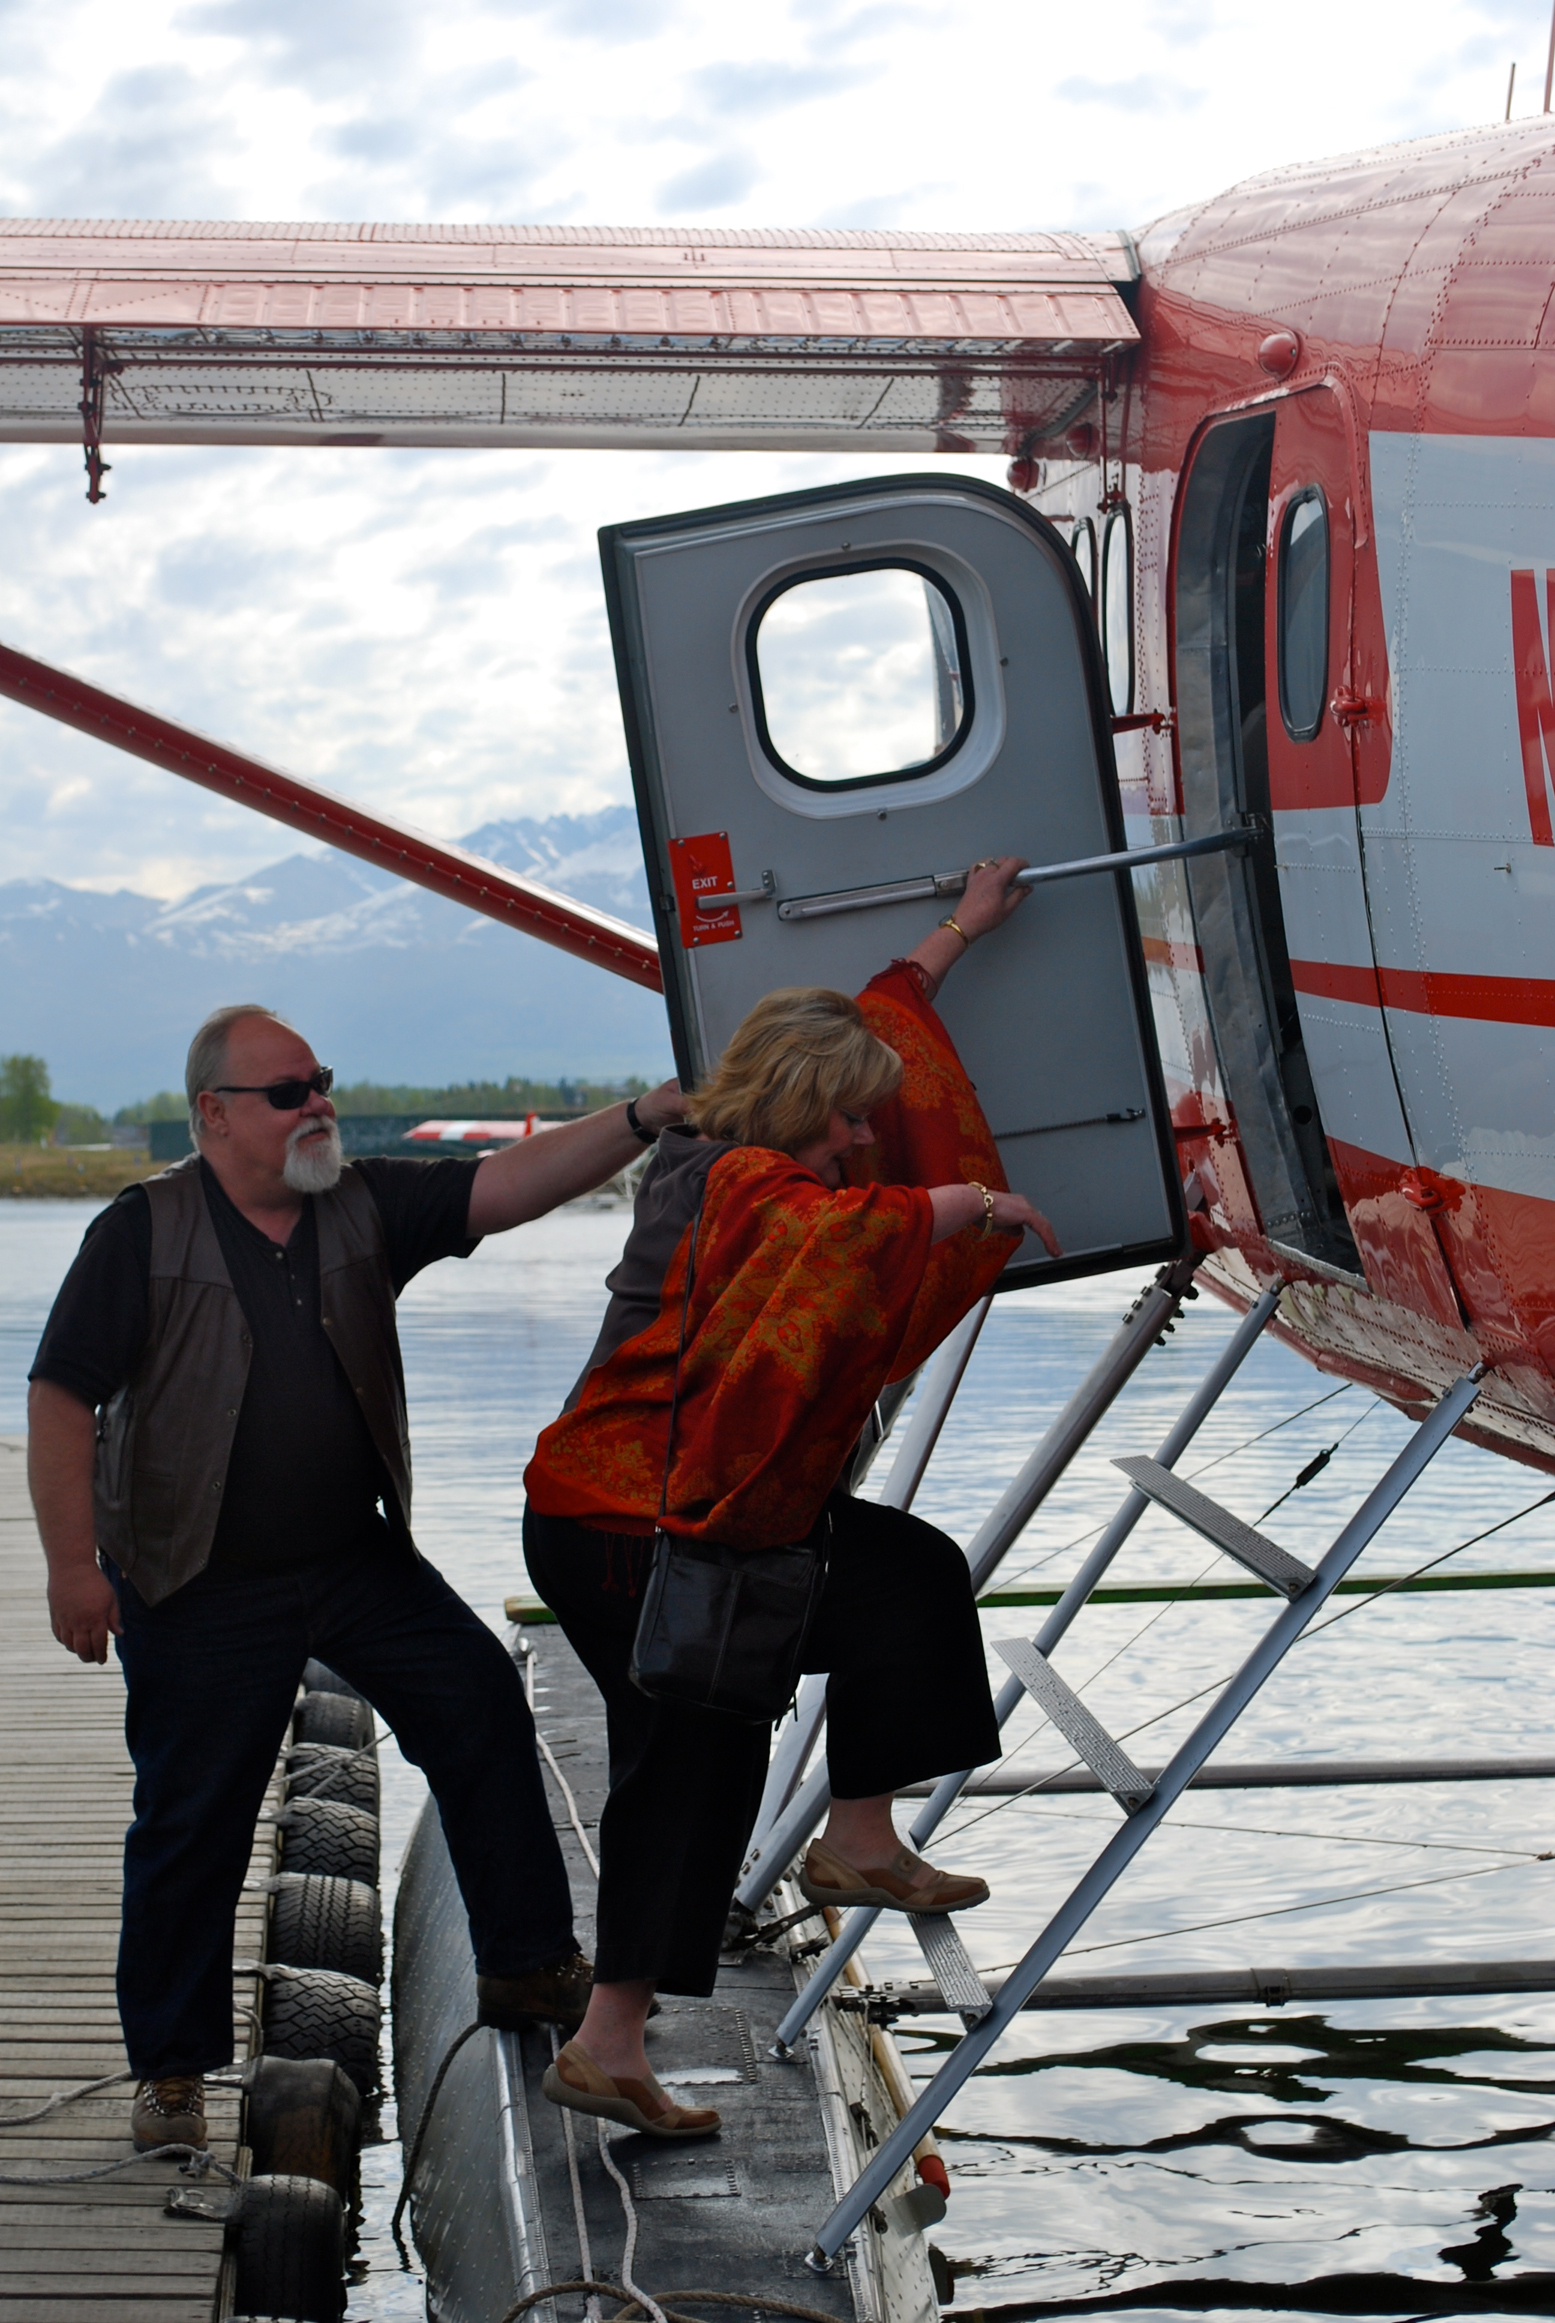 Bay trên thành phố Anchorage, khám phá Alaska bằng seaplane